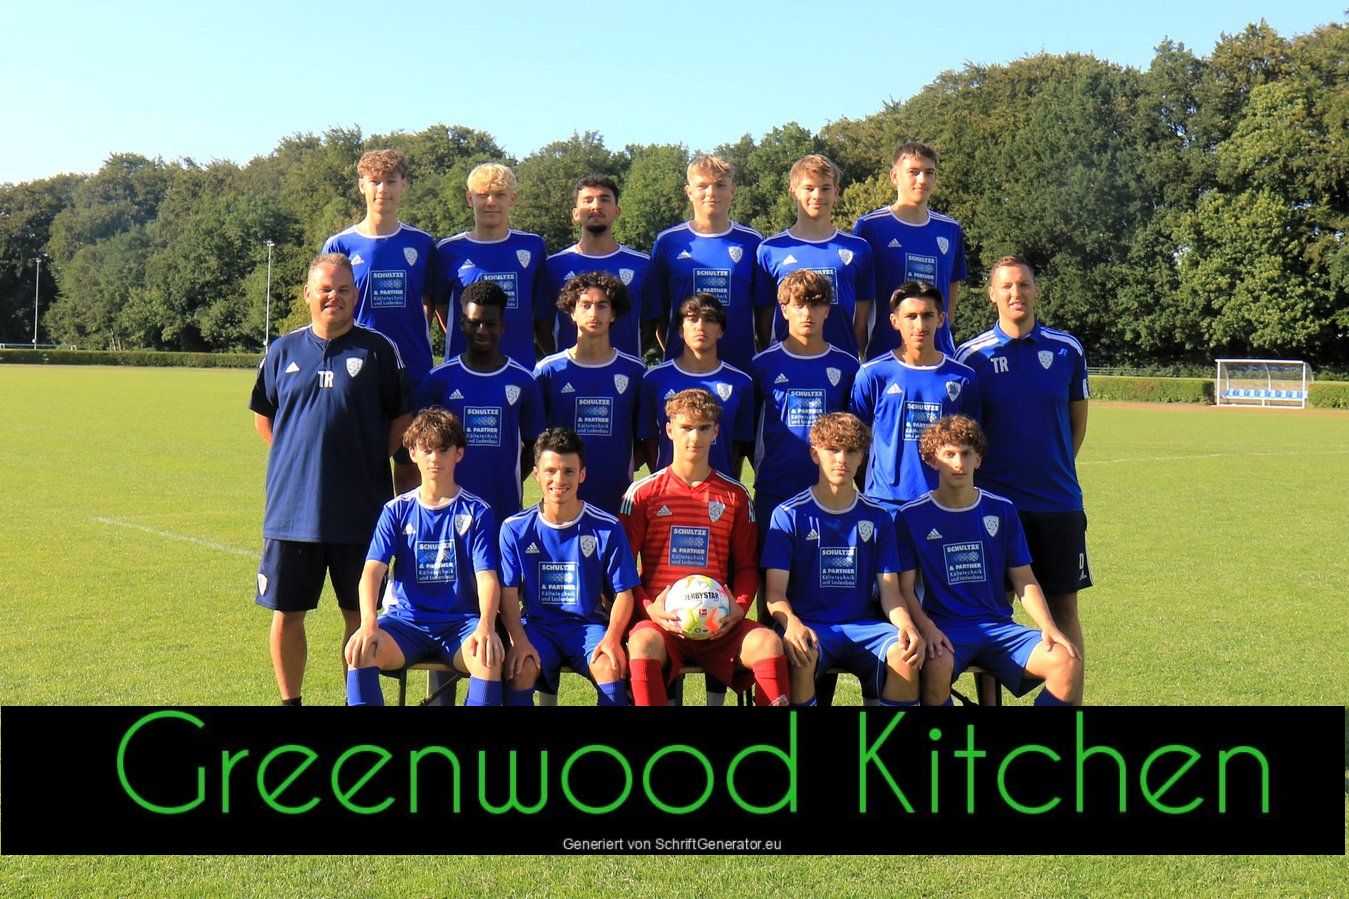 Der Spielball der U17 gegen Werder Bremen wird gesponsort von Greenwood Kitchen